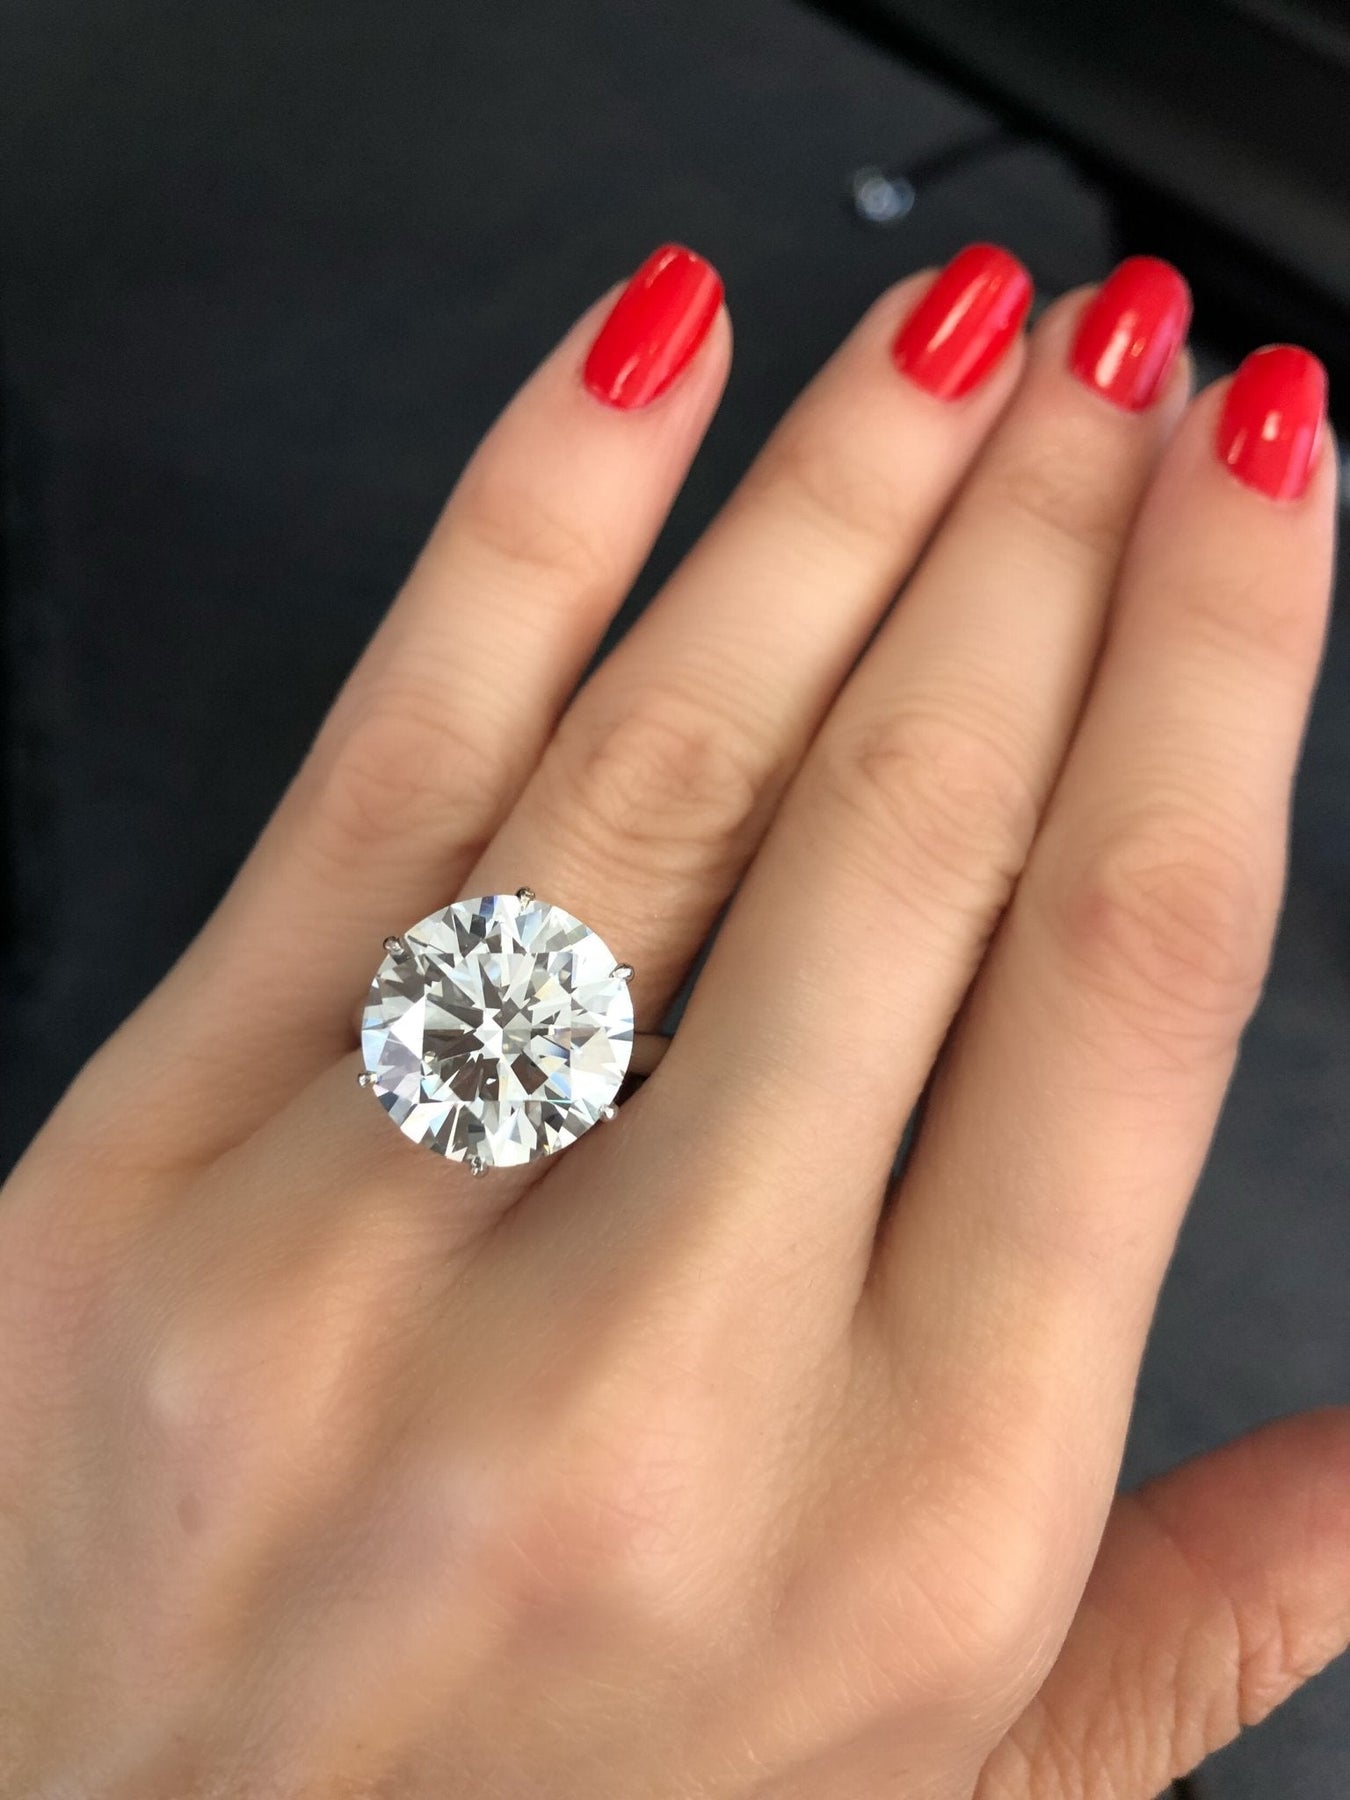 7 carat round brilliant cut diamond ring